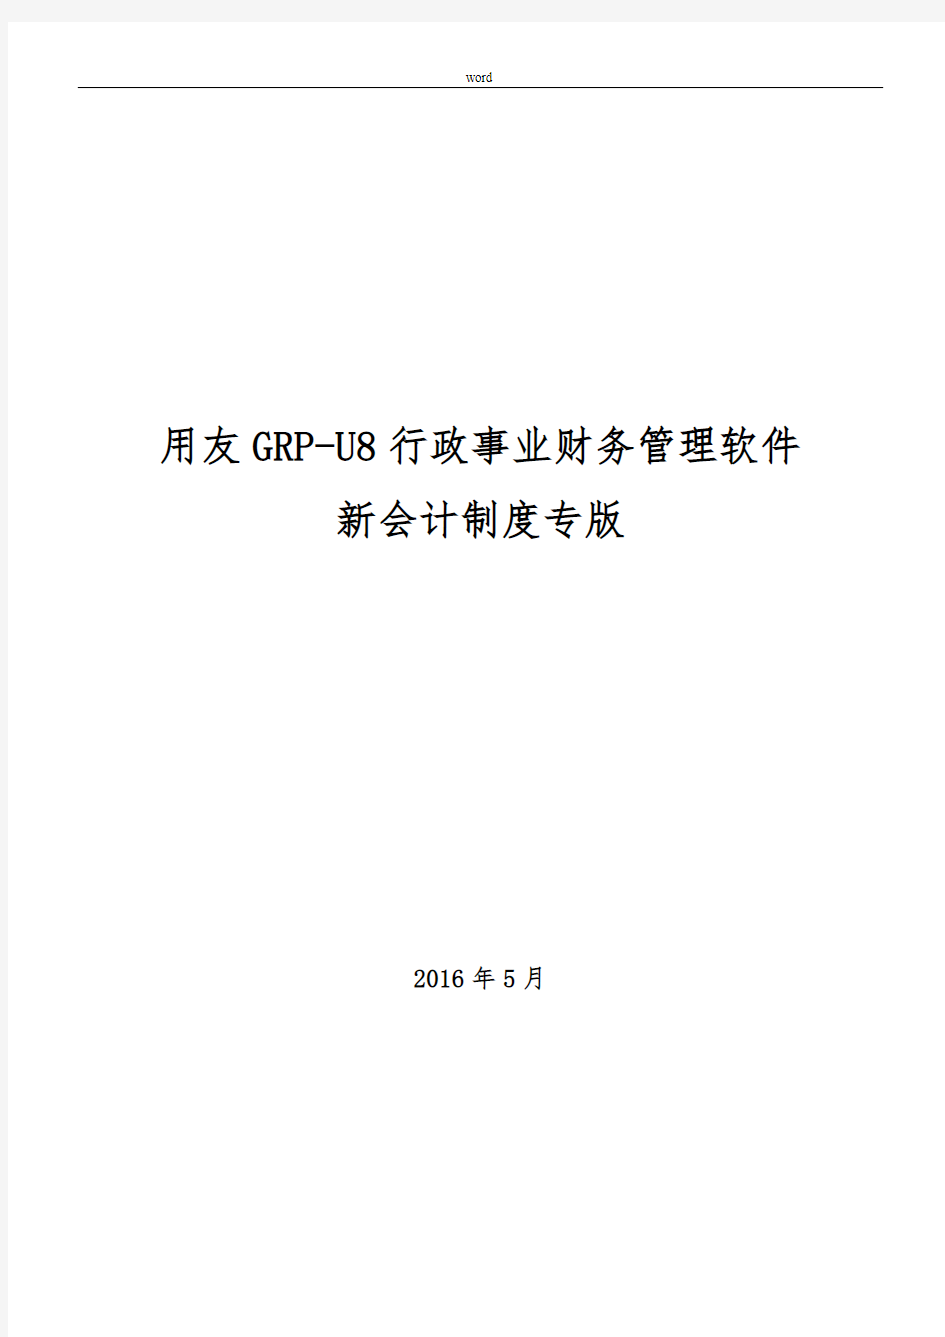 用友GRP-U8-行政事业单位财务管理软件操作手册